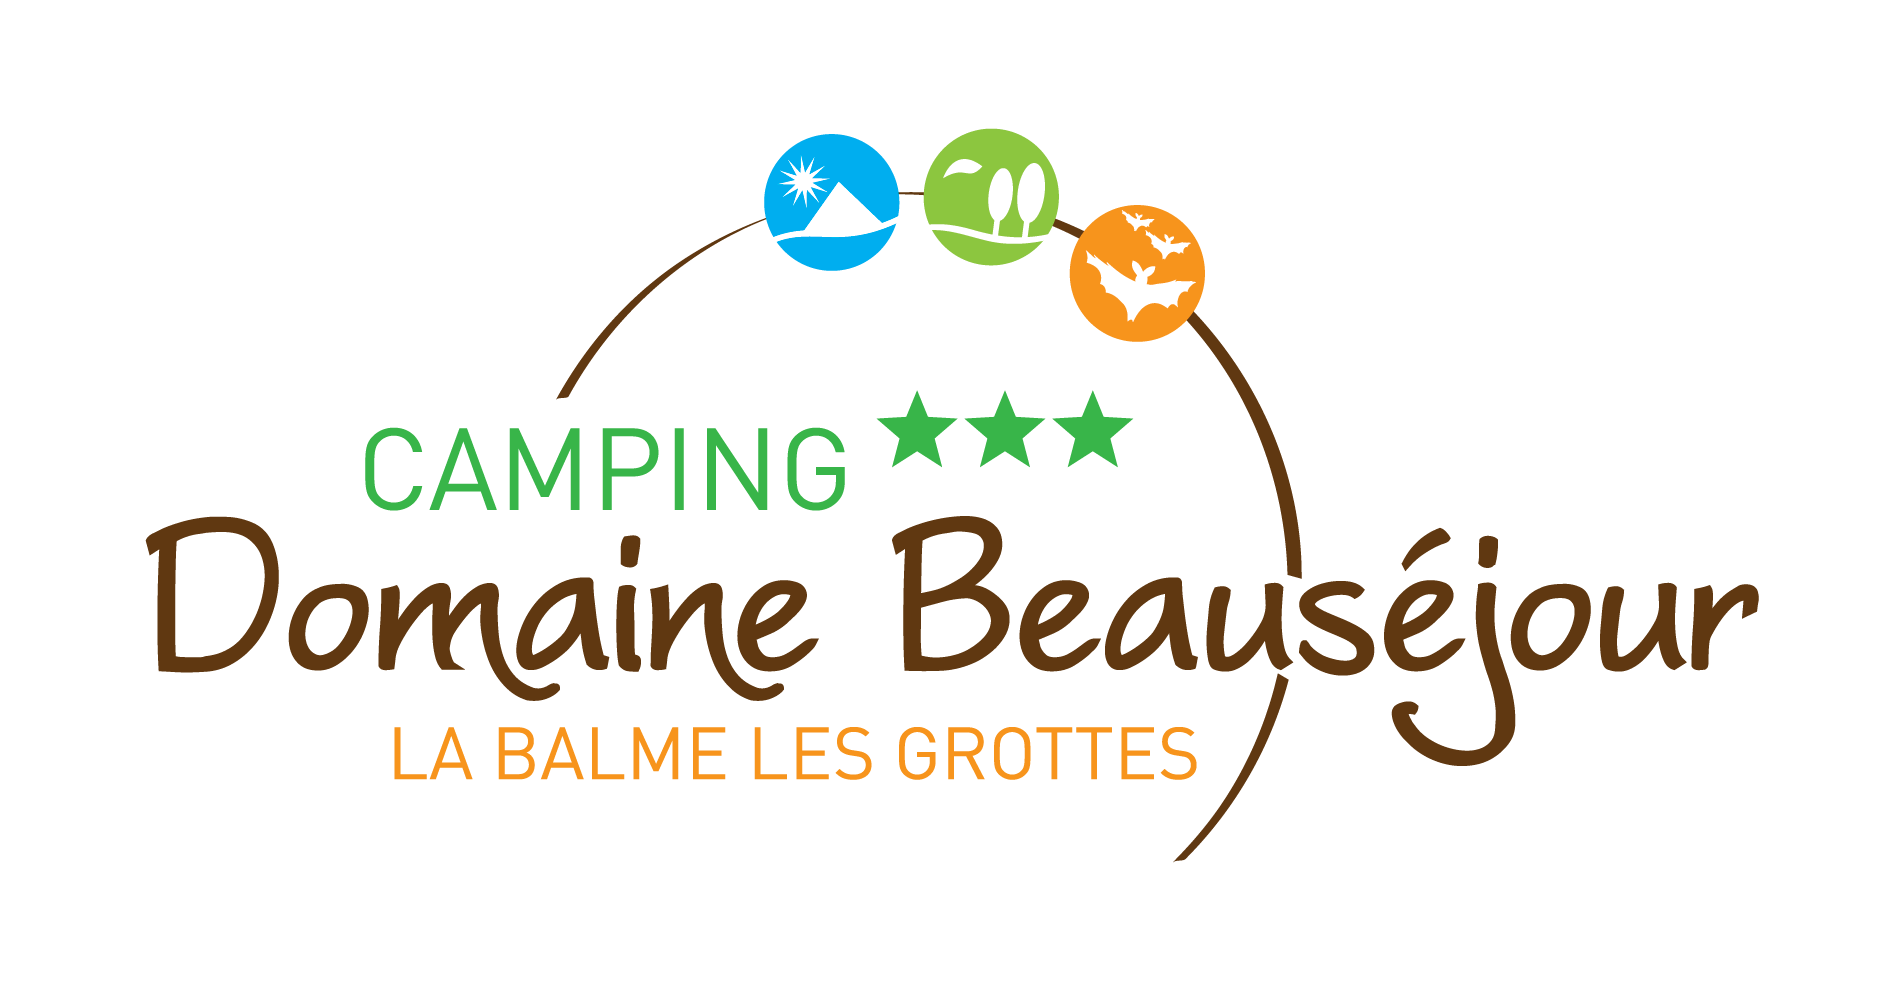 Owner Camping Domaine Beauséjour - La Balme Les Grottes